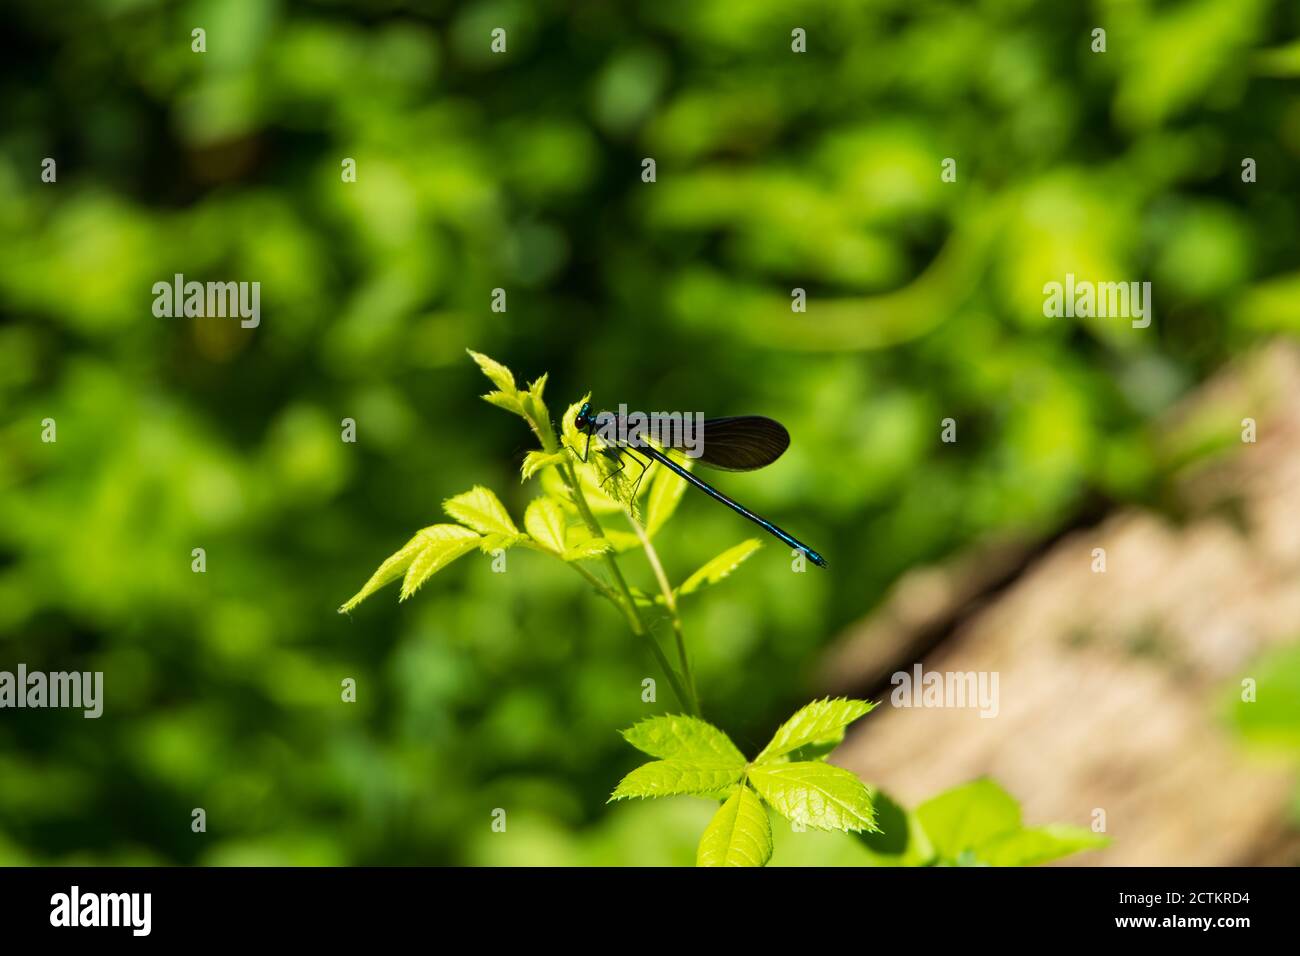 Un momento affascinante catturato: Una libellula delicatamente arroccata su una pianta, che mostra l'intricata bellezza della danza della natura Foto Stock